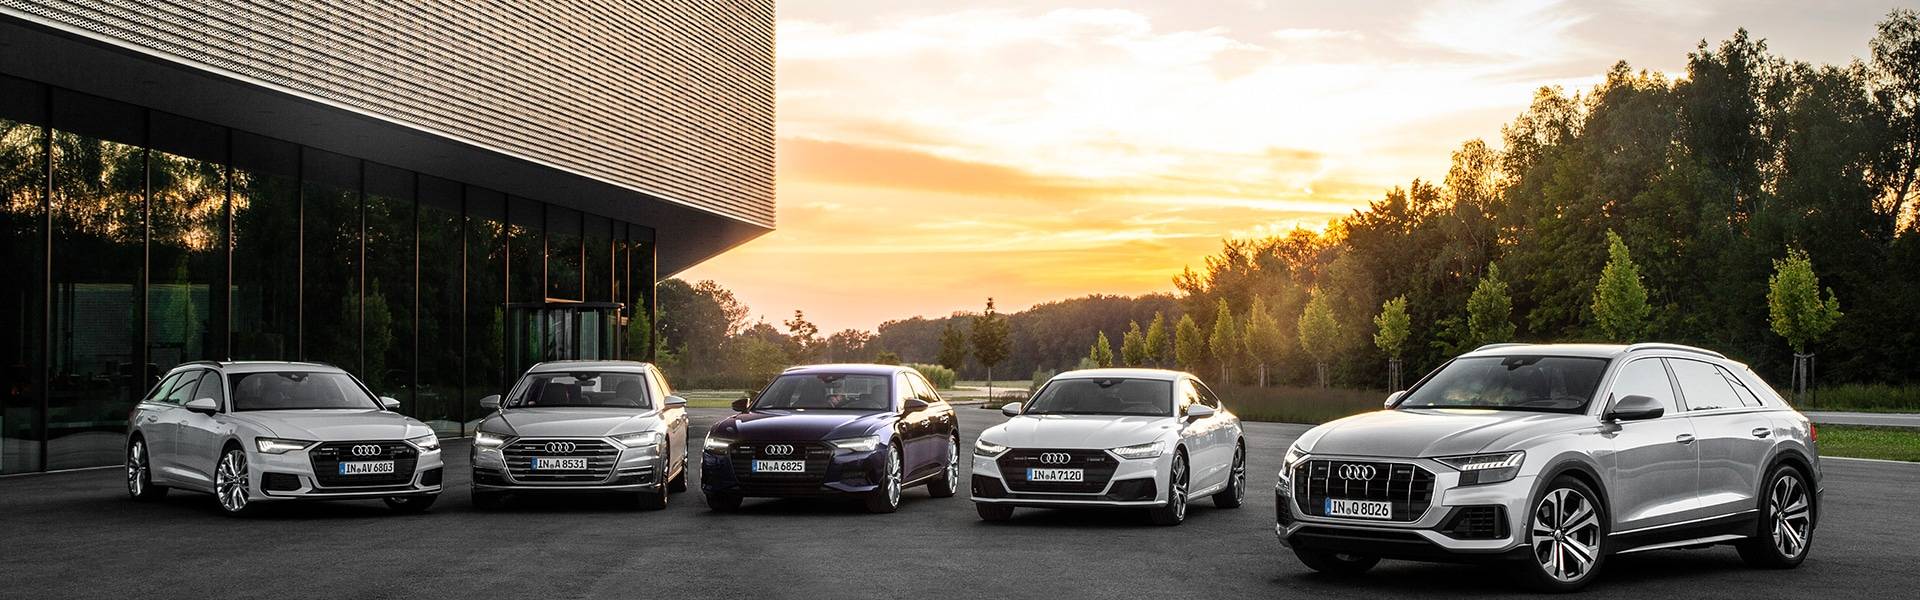 Audi modellek egymás mellett